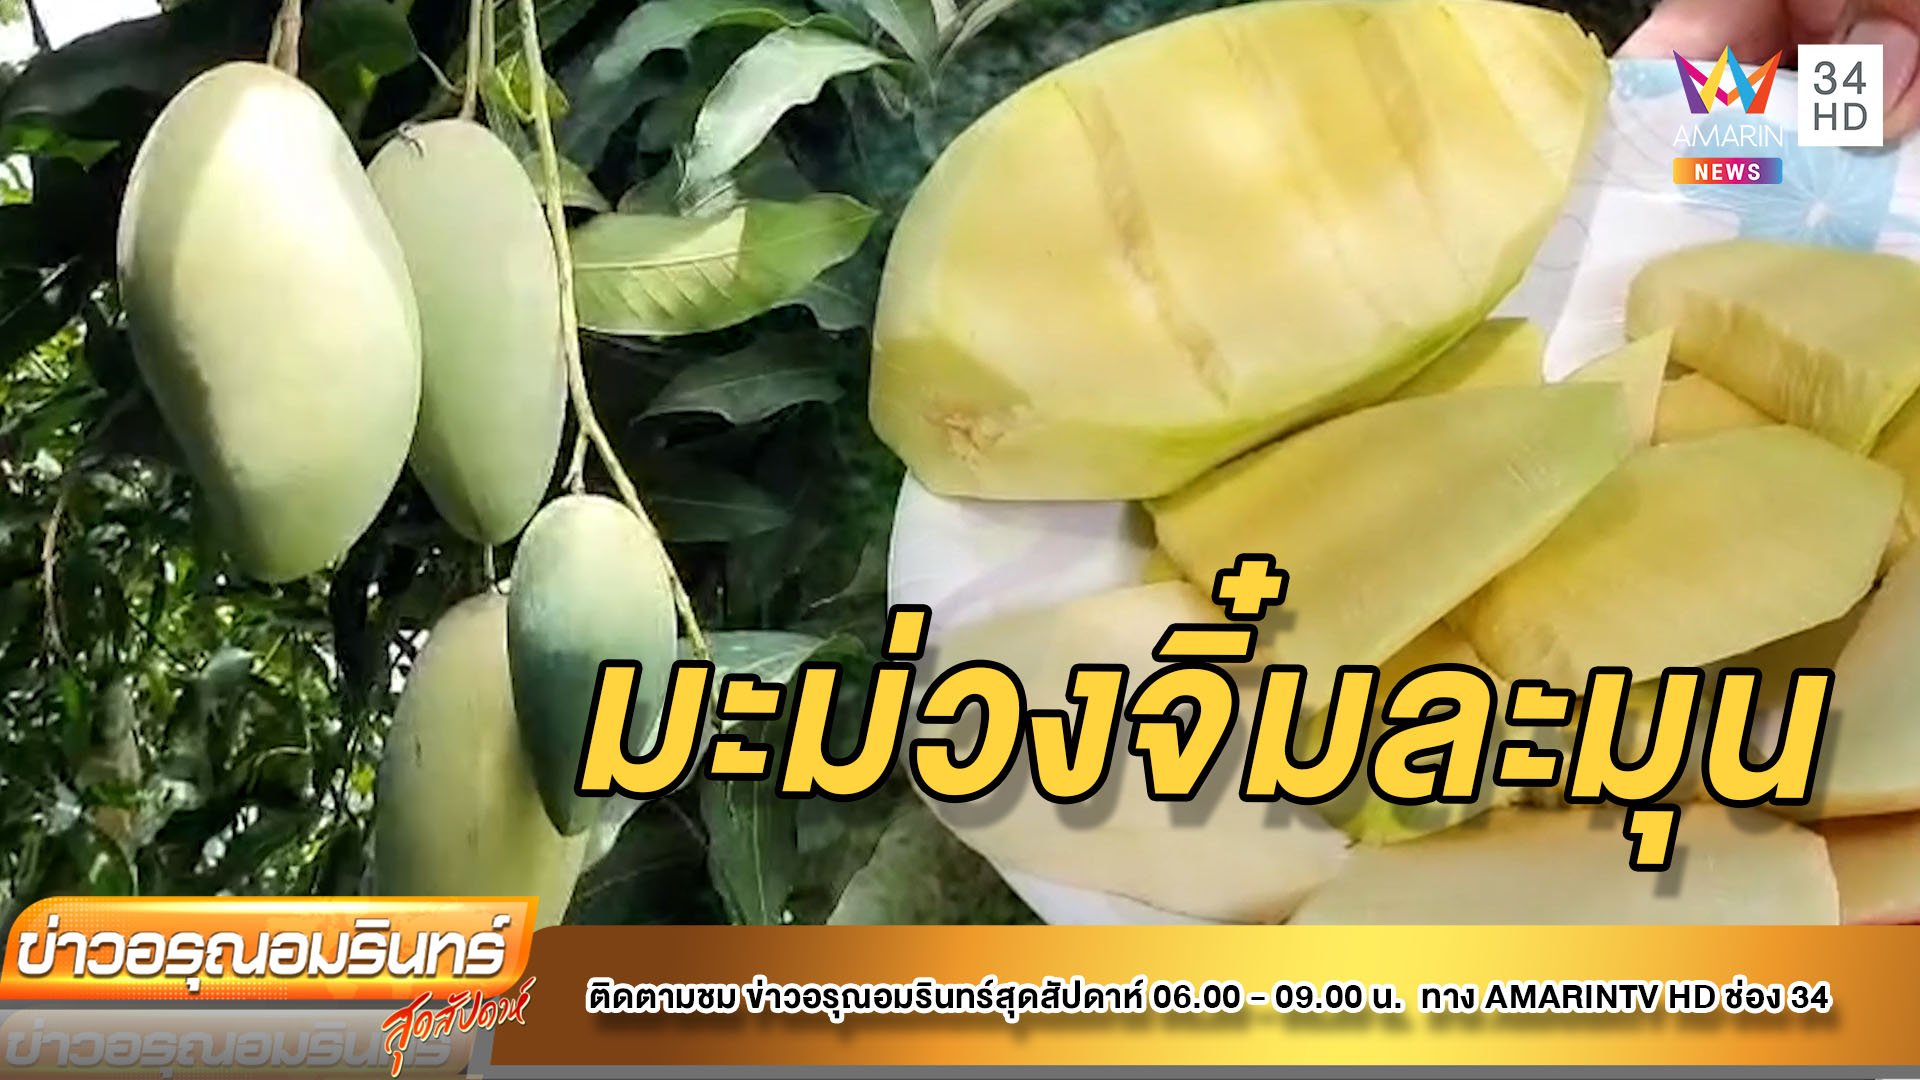 “จิ๋มละมุน” มะม่วงพันธุ์ใหม่ หวาน อร่อยจากบ้านแพ้ว | ข่าวอรุณอมรินทร์ | 26 มี.ค. 65 | AMARIN TVHD34